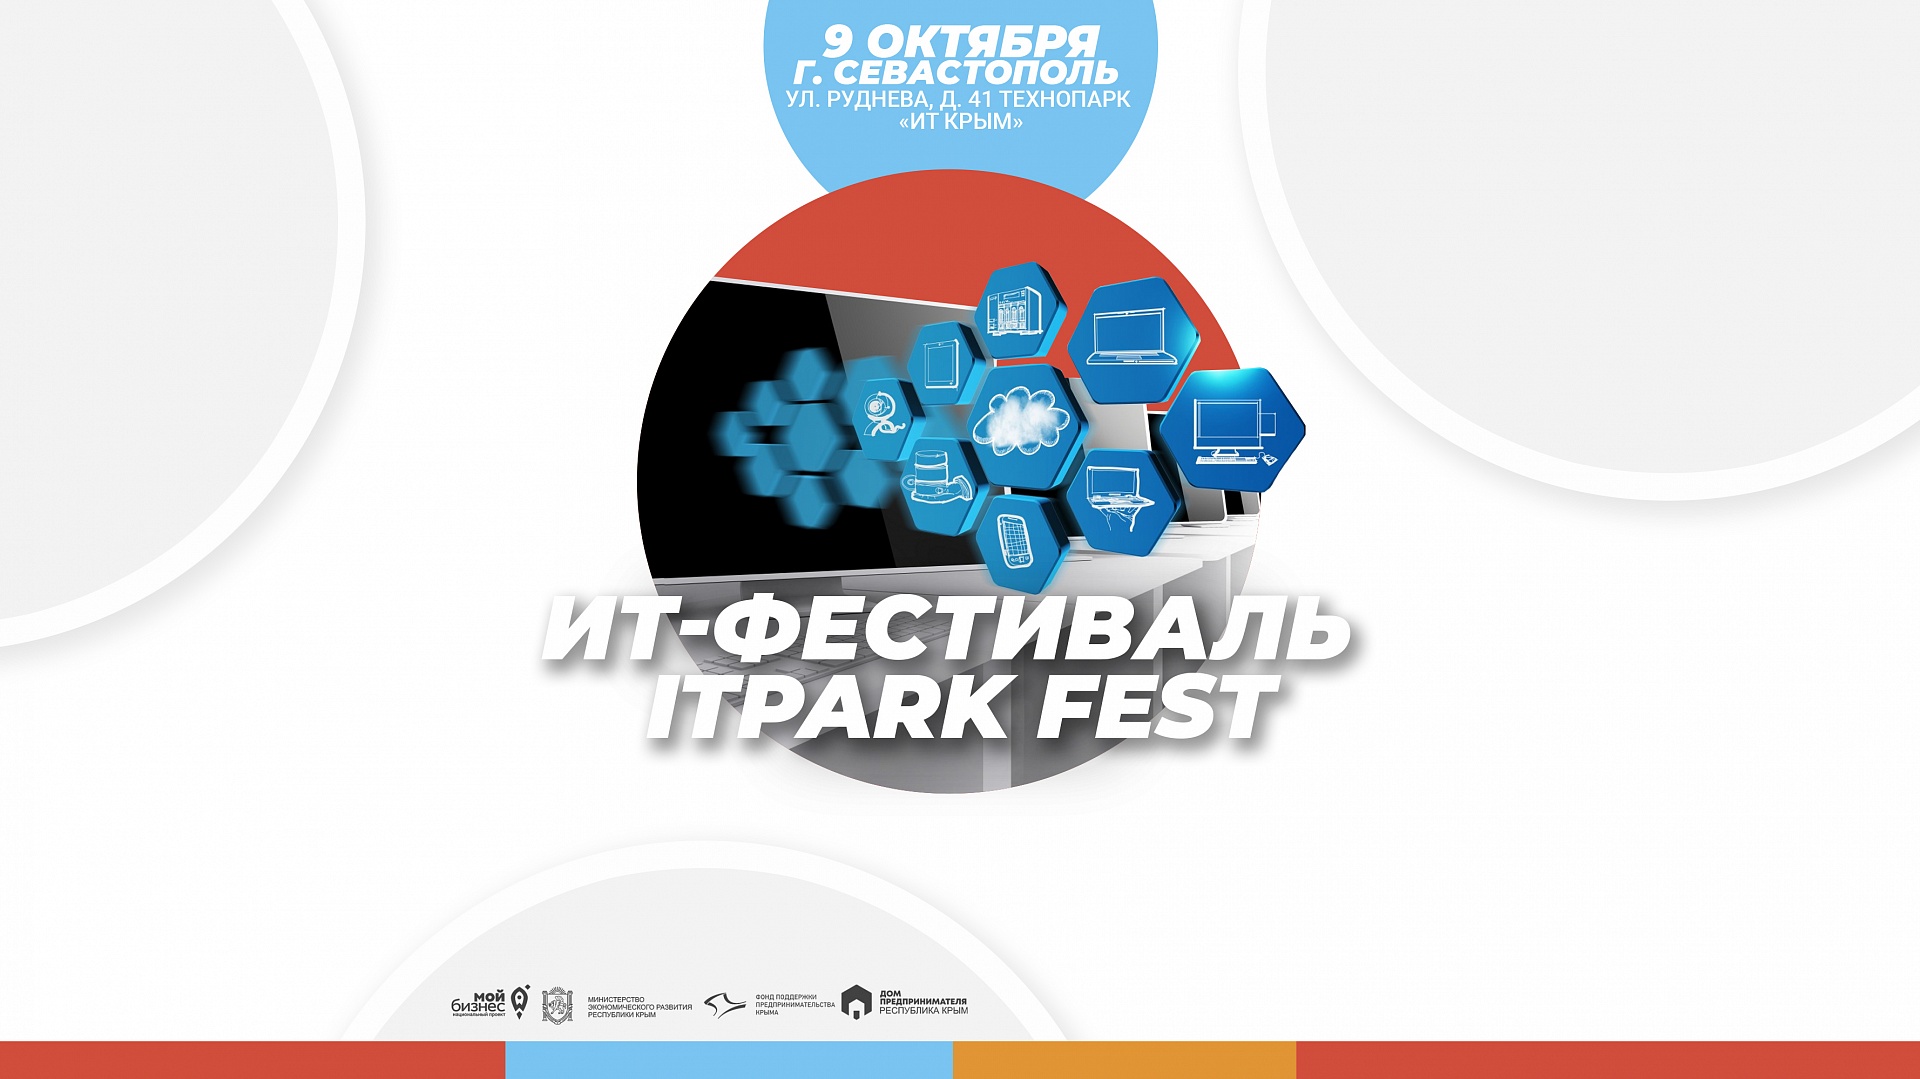 Фонд поддержки предпринимательства Крыма информирует о проведении фестиваля ITPARK FEST в технопарке «ИТ Крым»